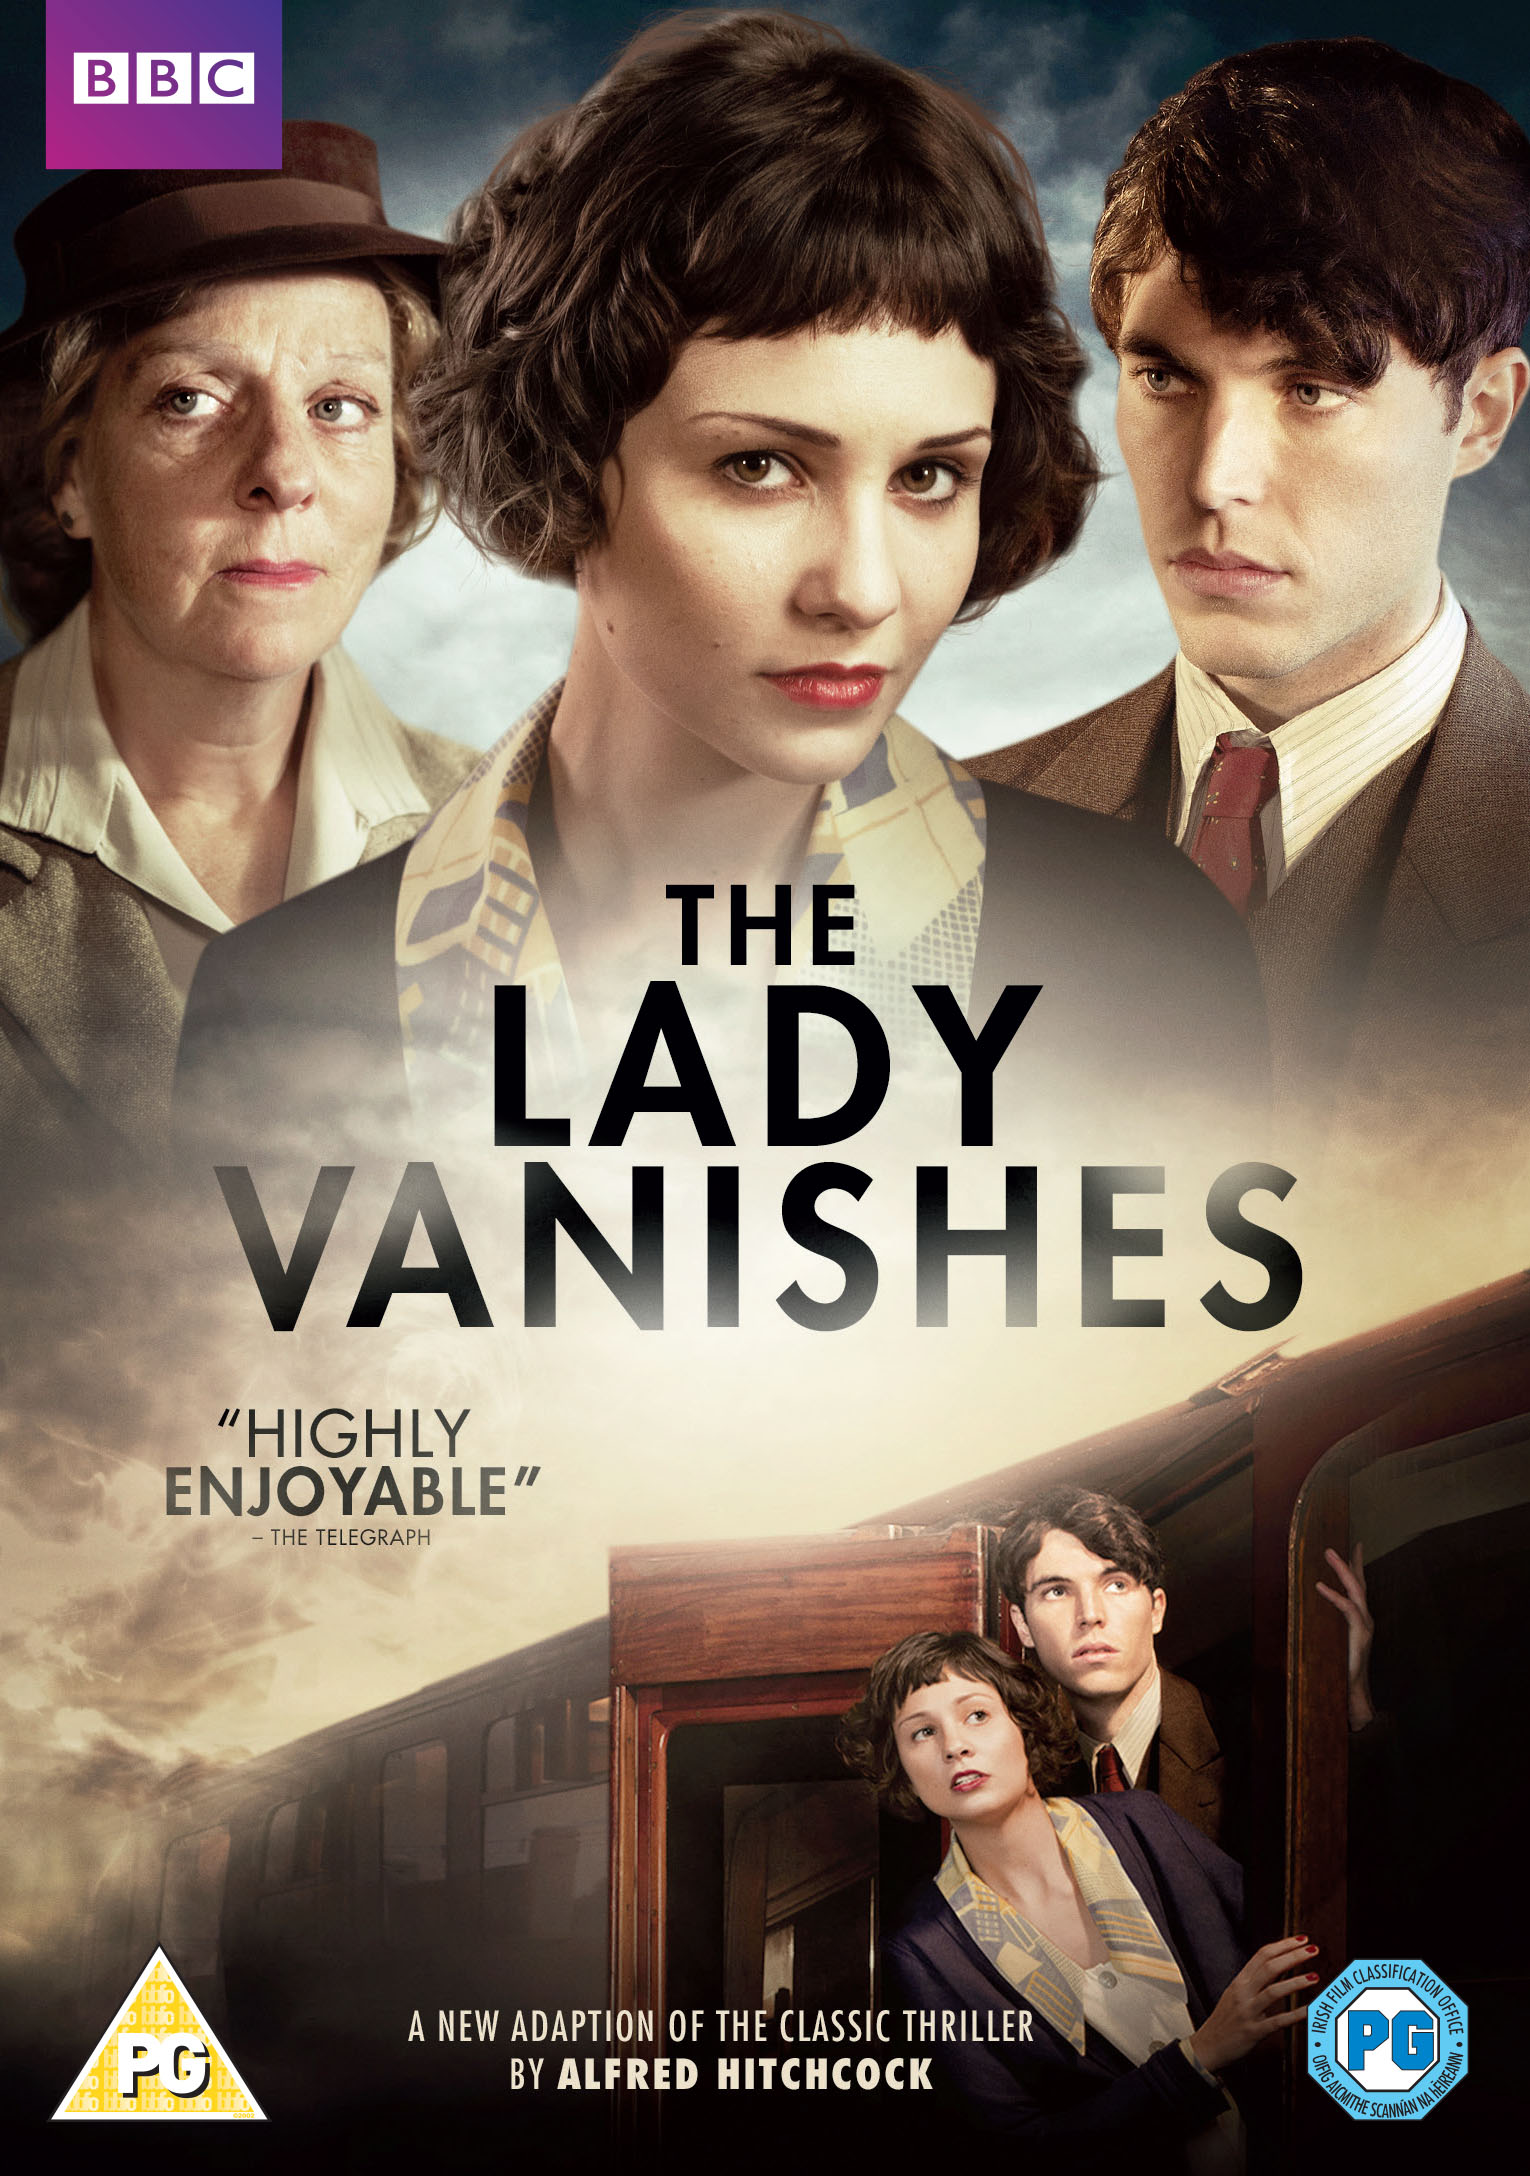 The Lady Vanishes (2013) UK DVD